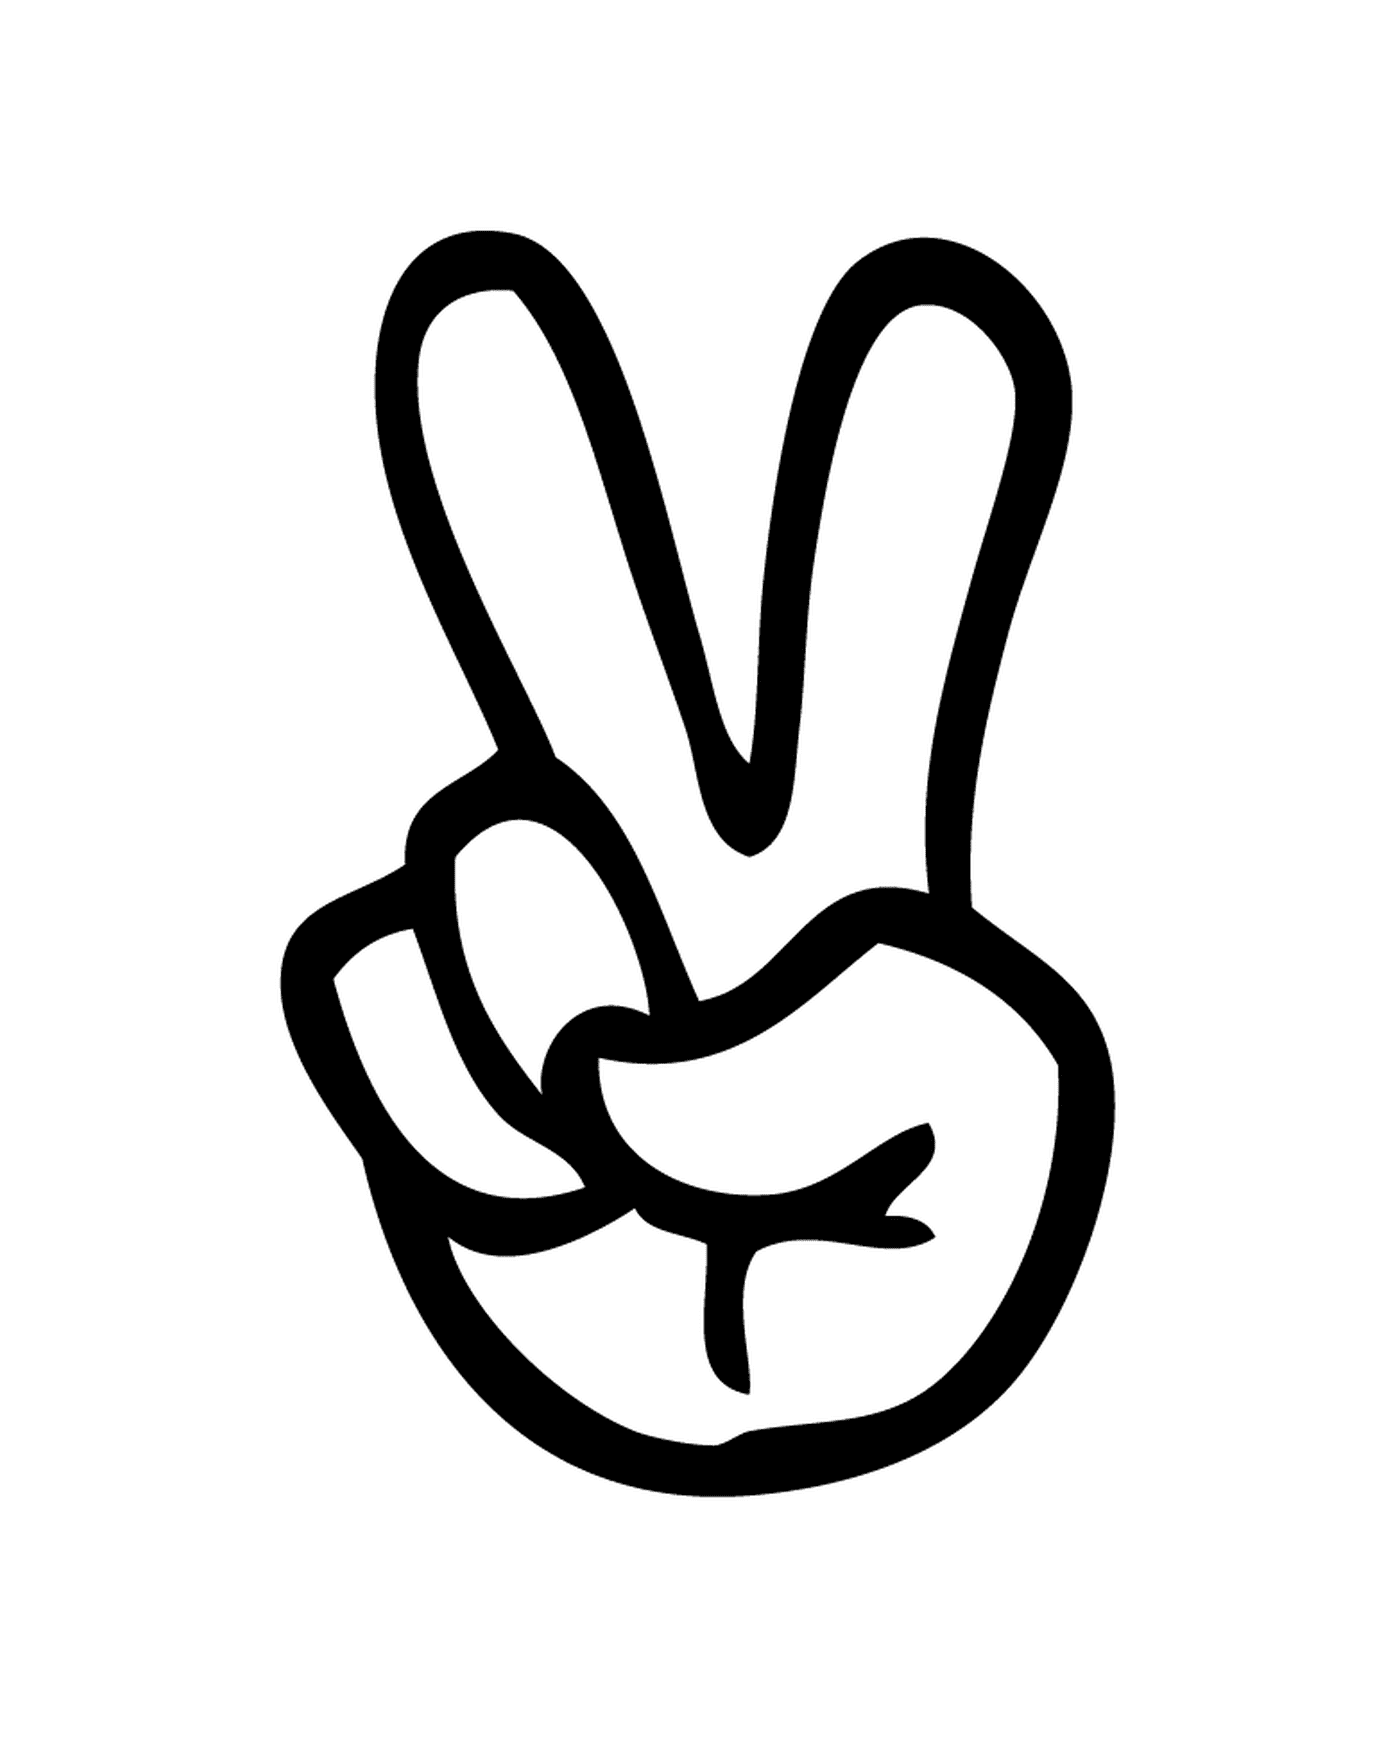   Une main avec un signe de paix dessiné dessus 